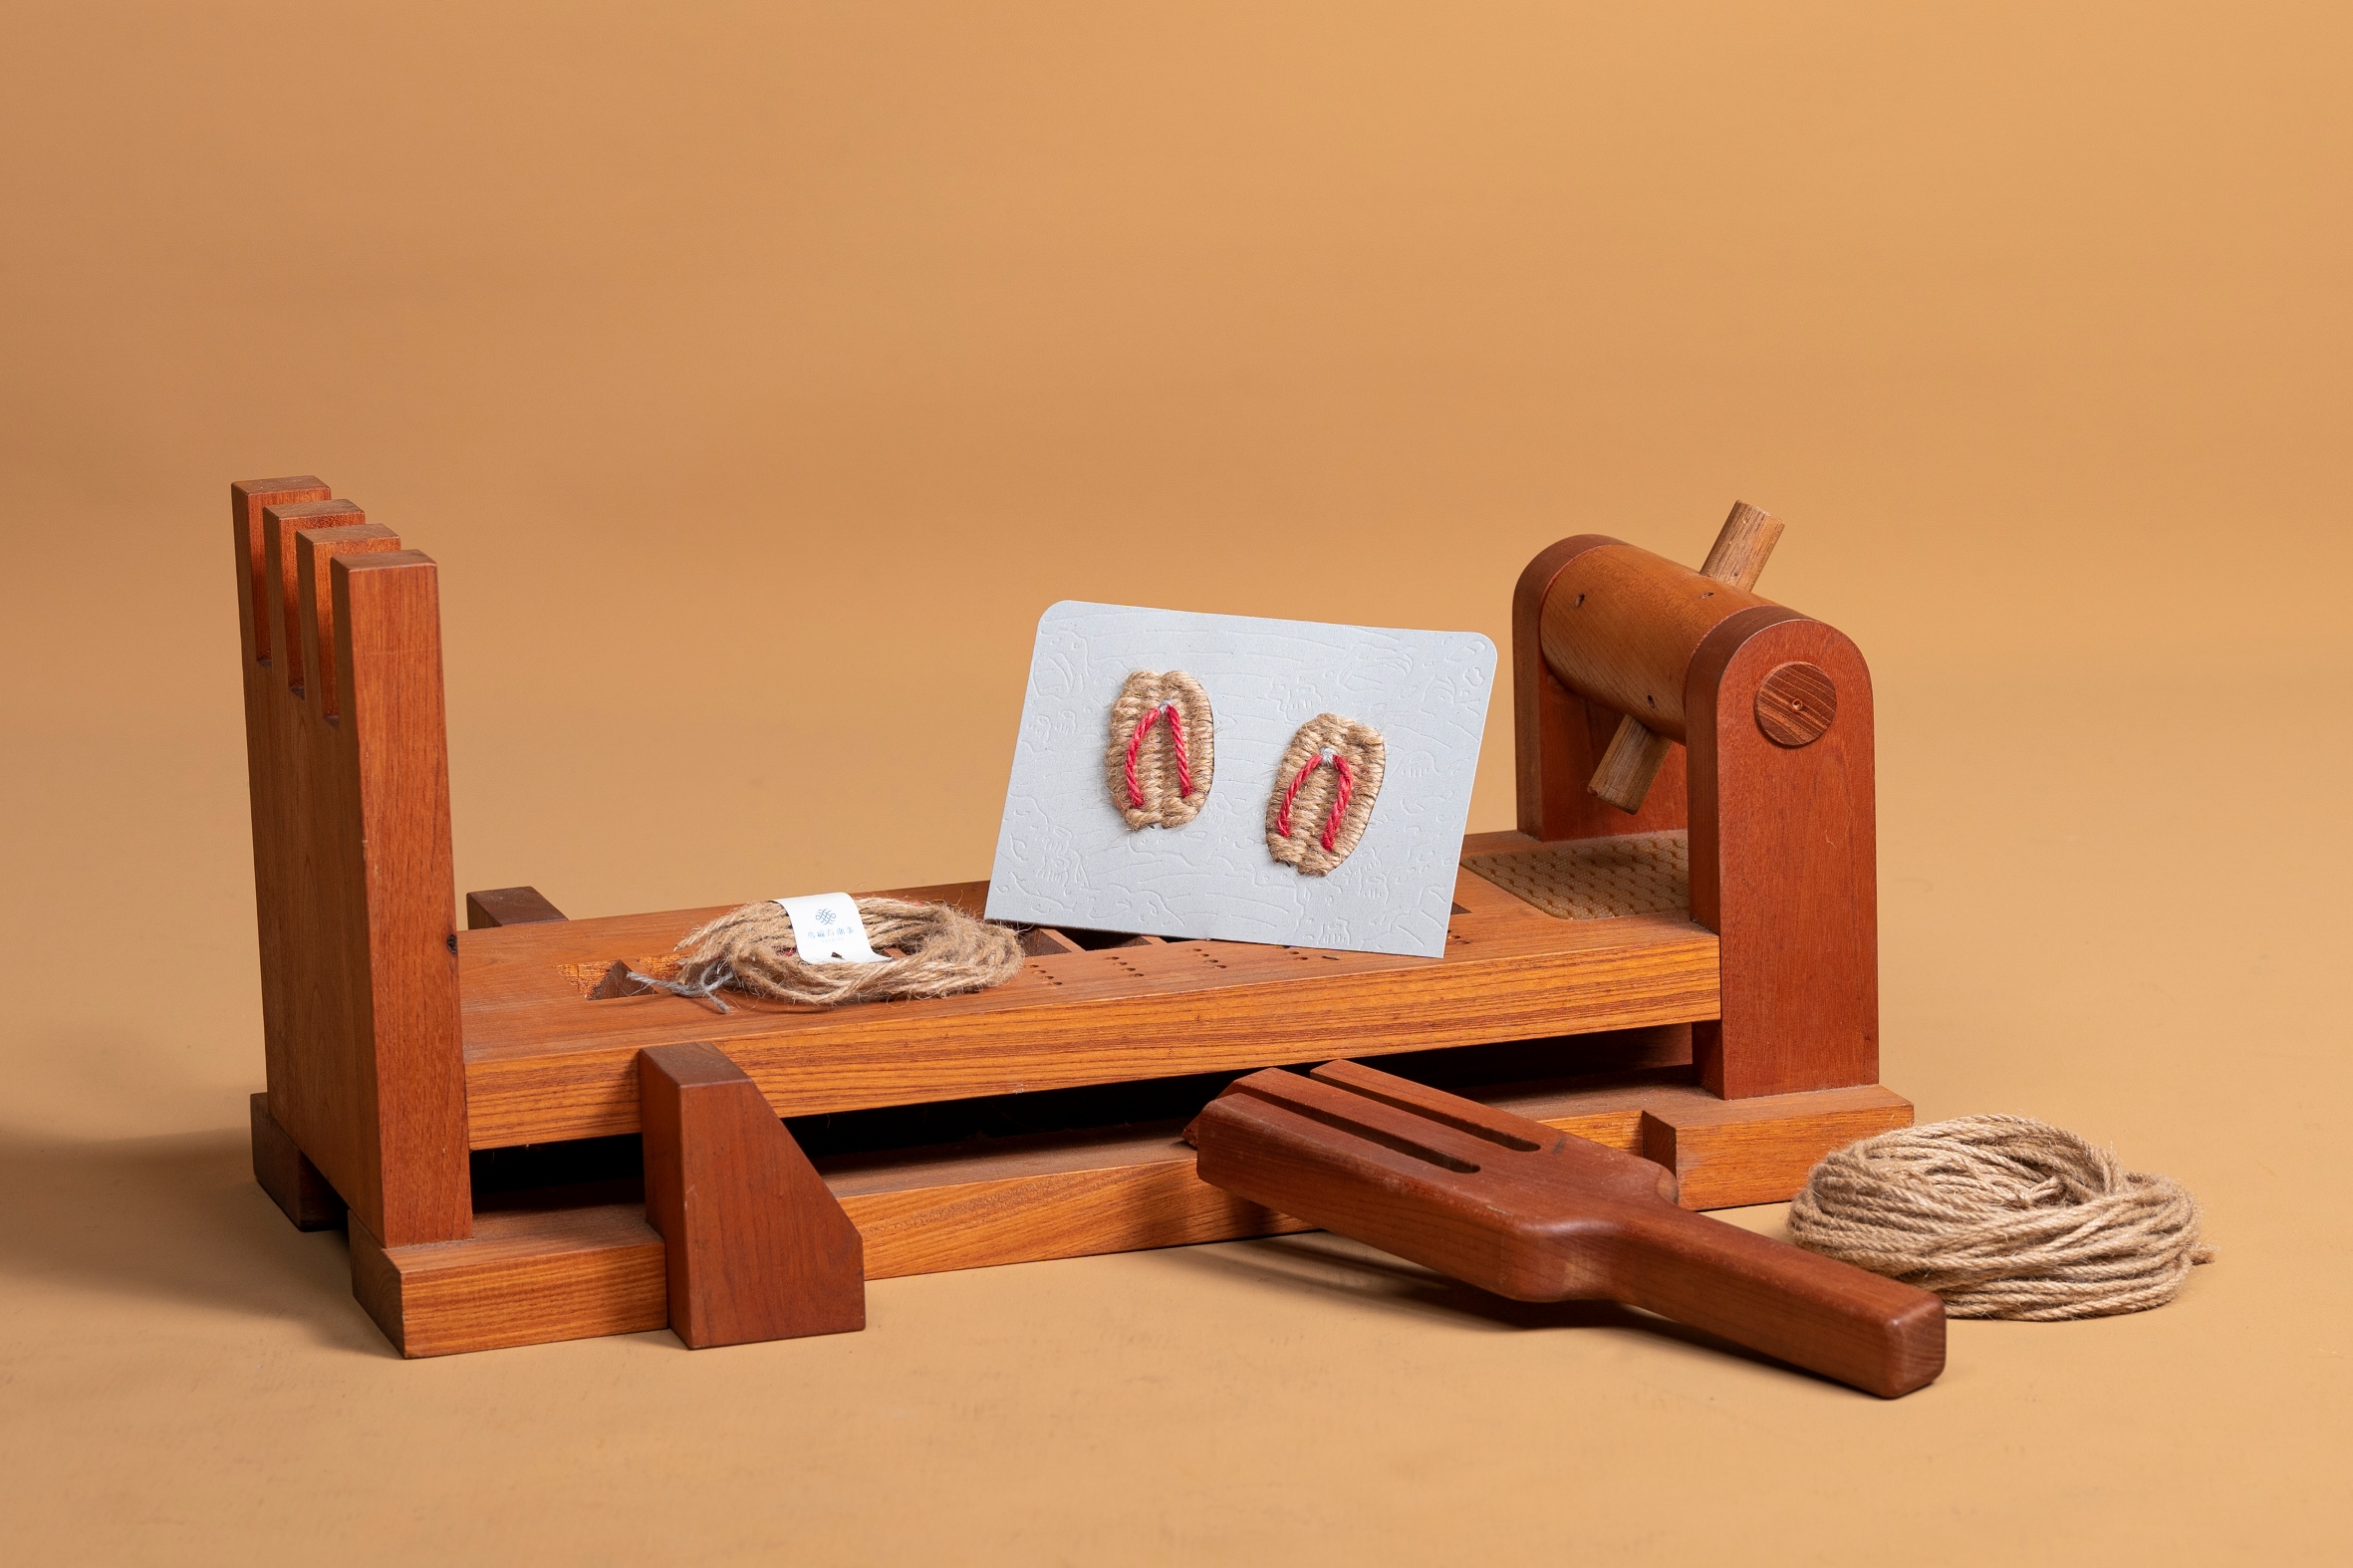 Straw sandal craftsmanship from Penghu